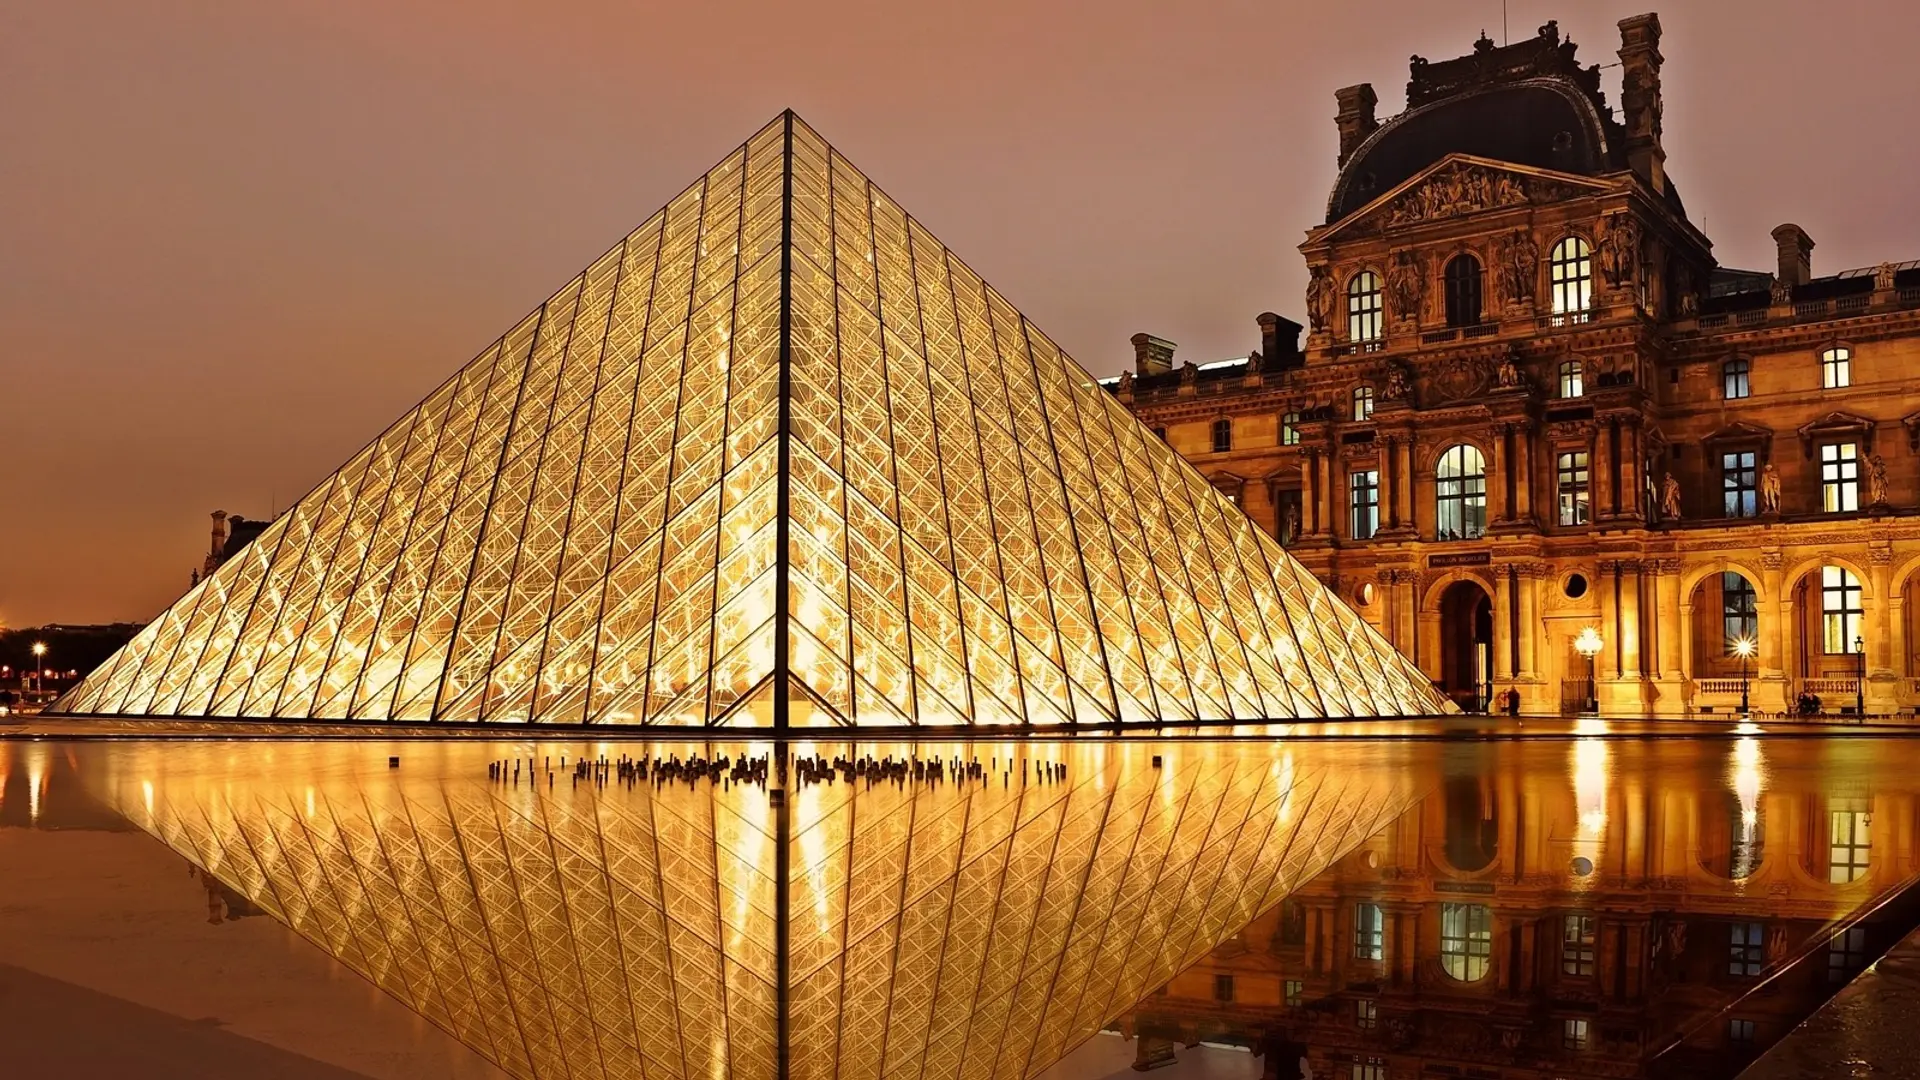 Destinations Articles - Paris Travel Guide